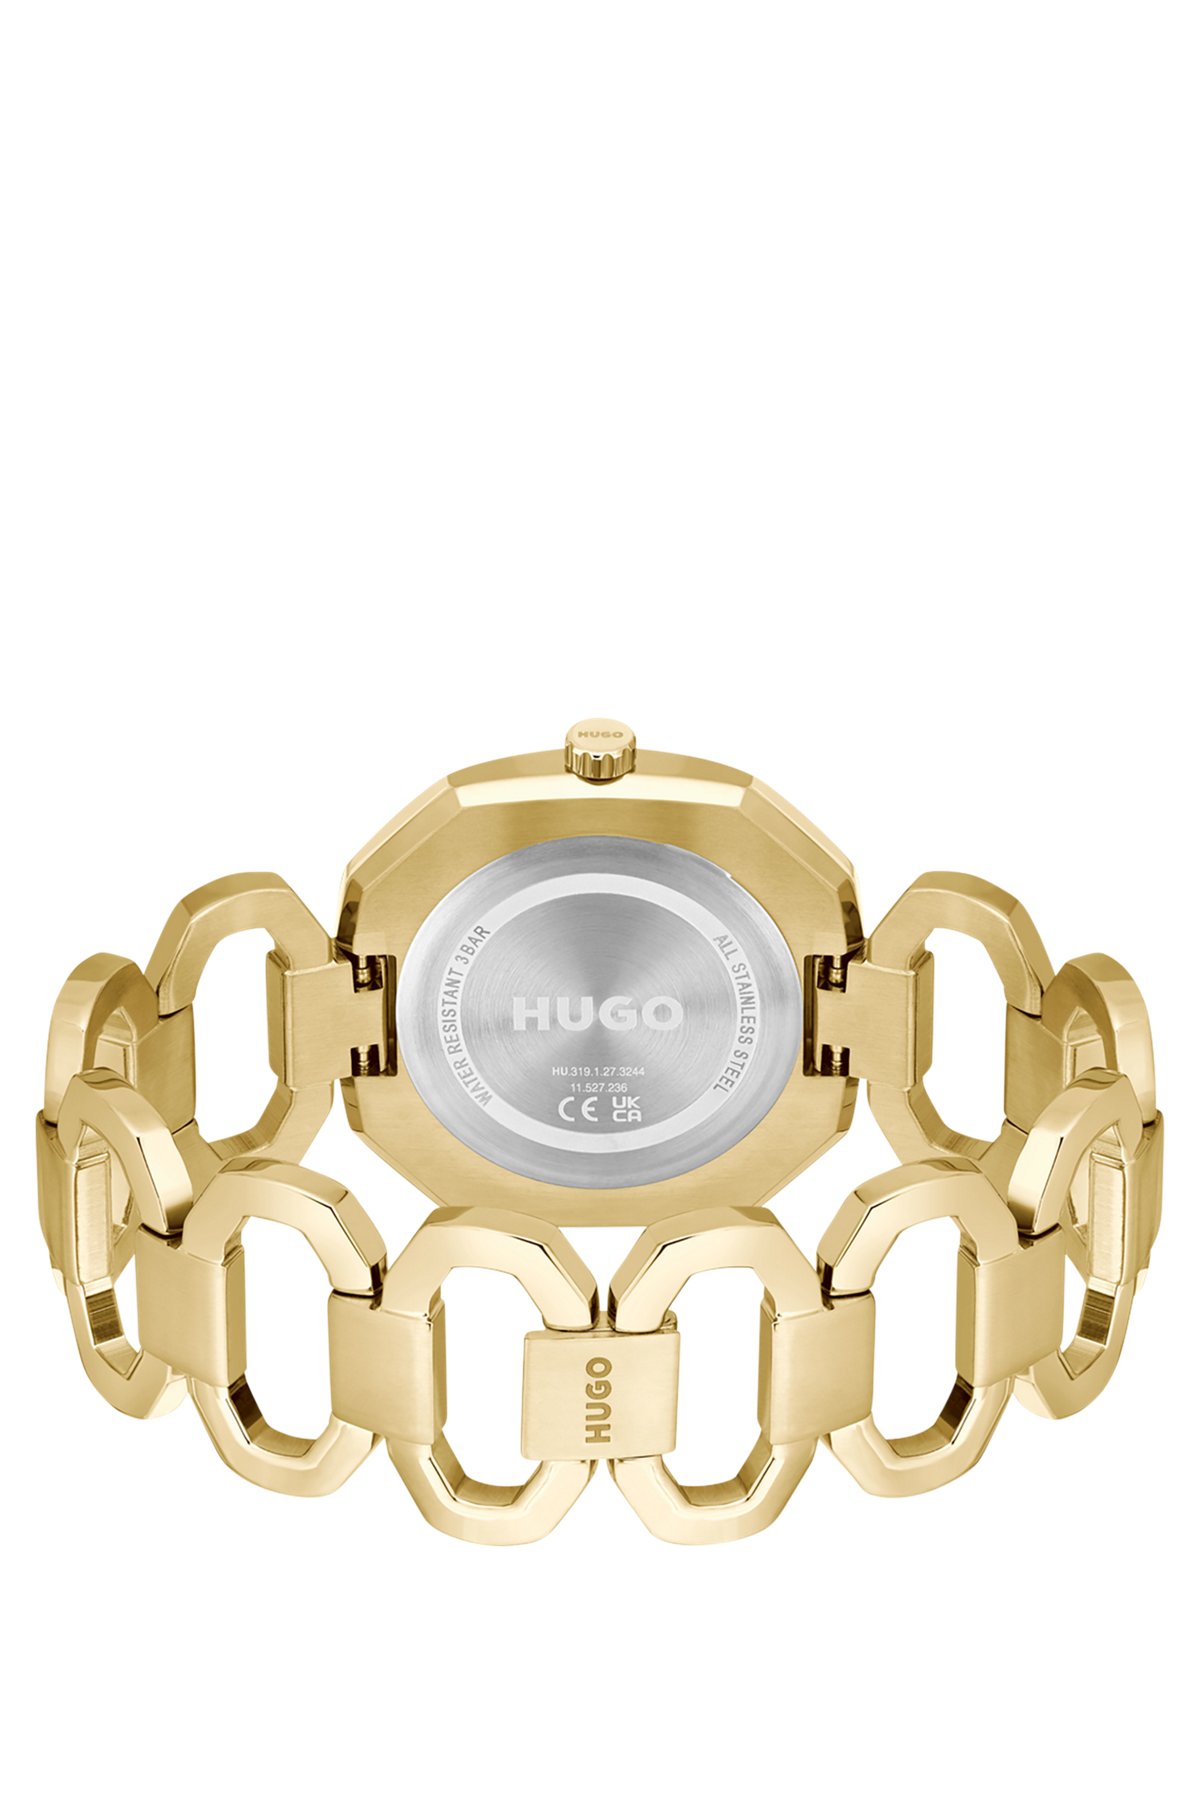 Goudkleurig horloge met geschakelde polsband, goud